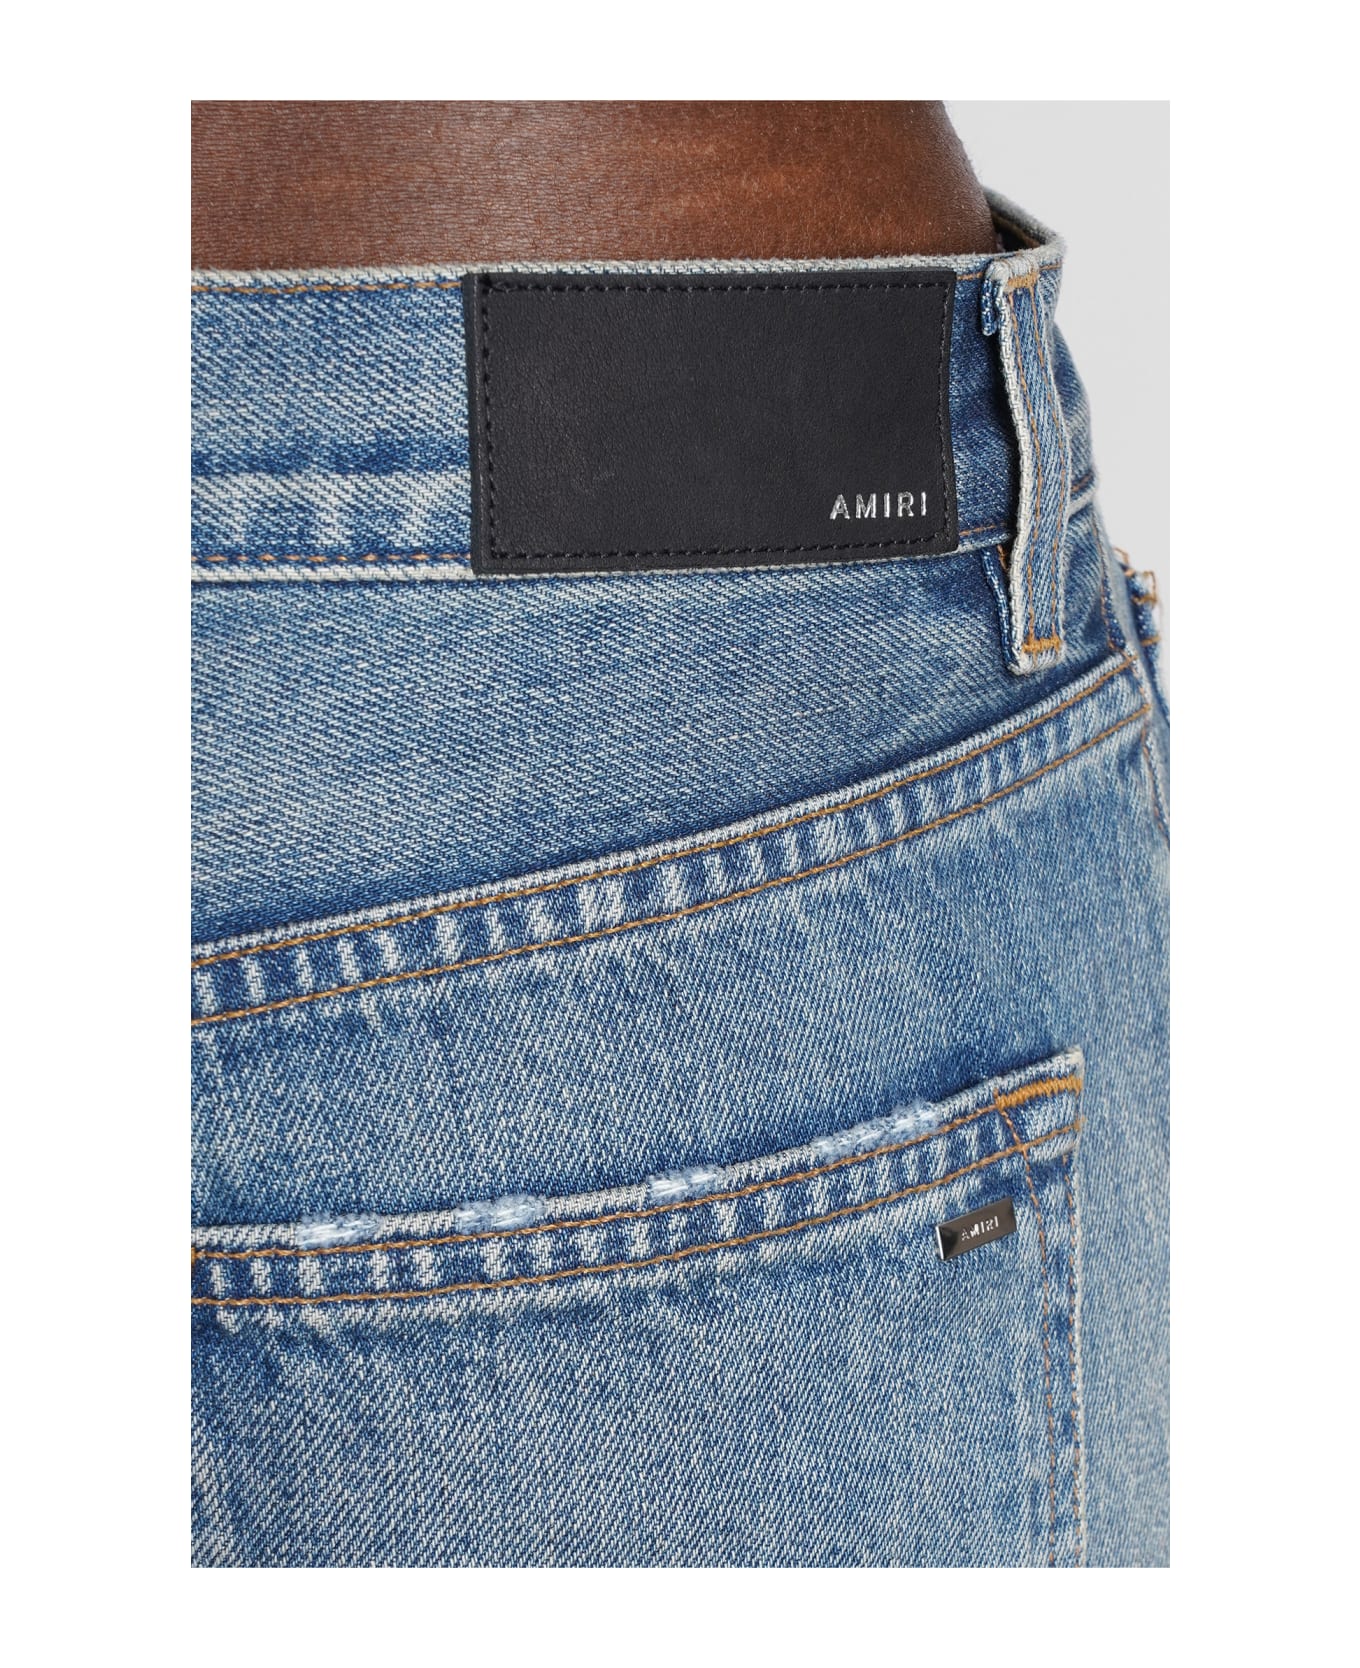 AMIRI Jeans In Cyan Denim - 885 デニム